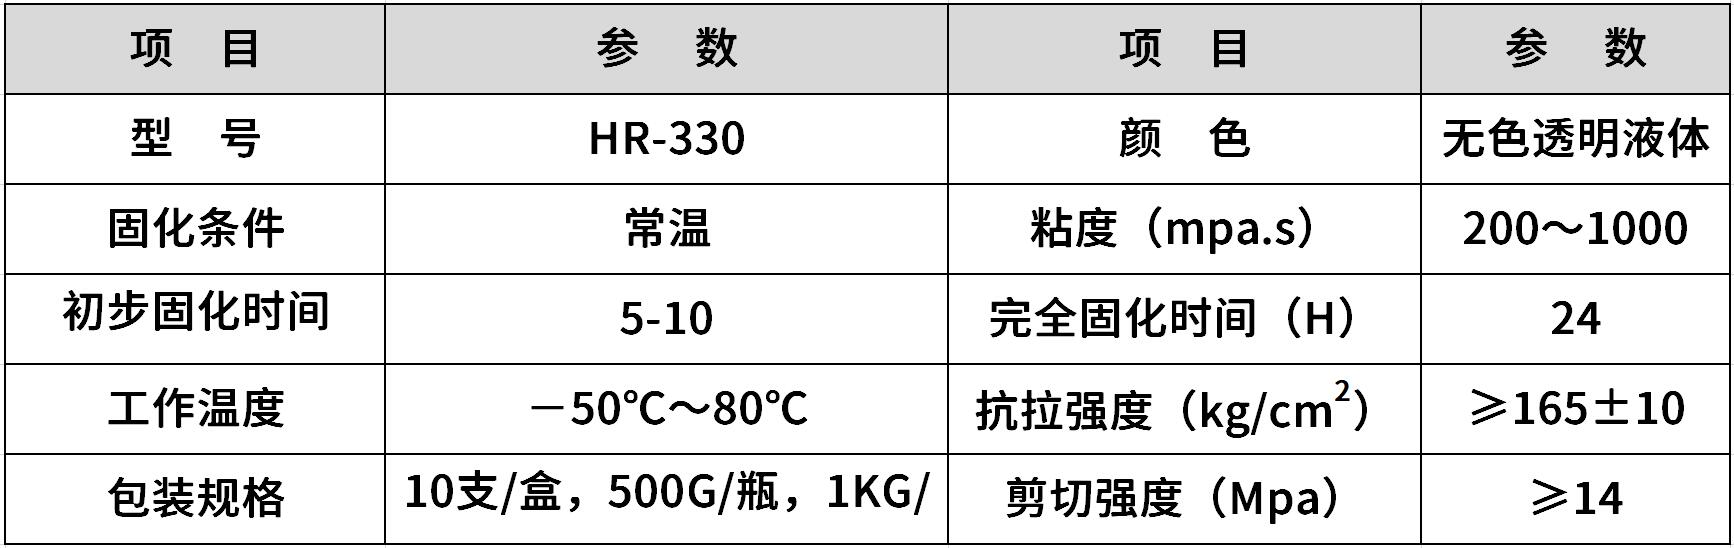 HR-330 通用型快干胶